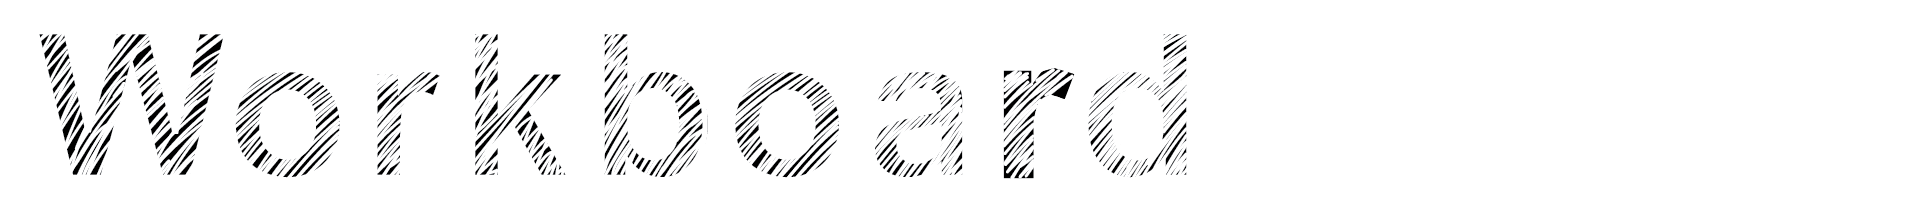 Workboard Media Logo Type